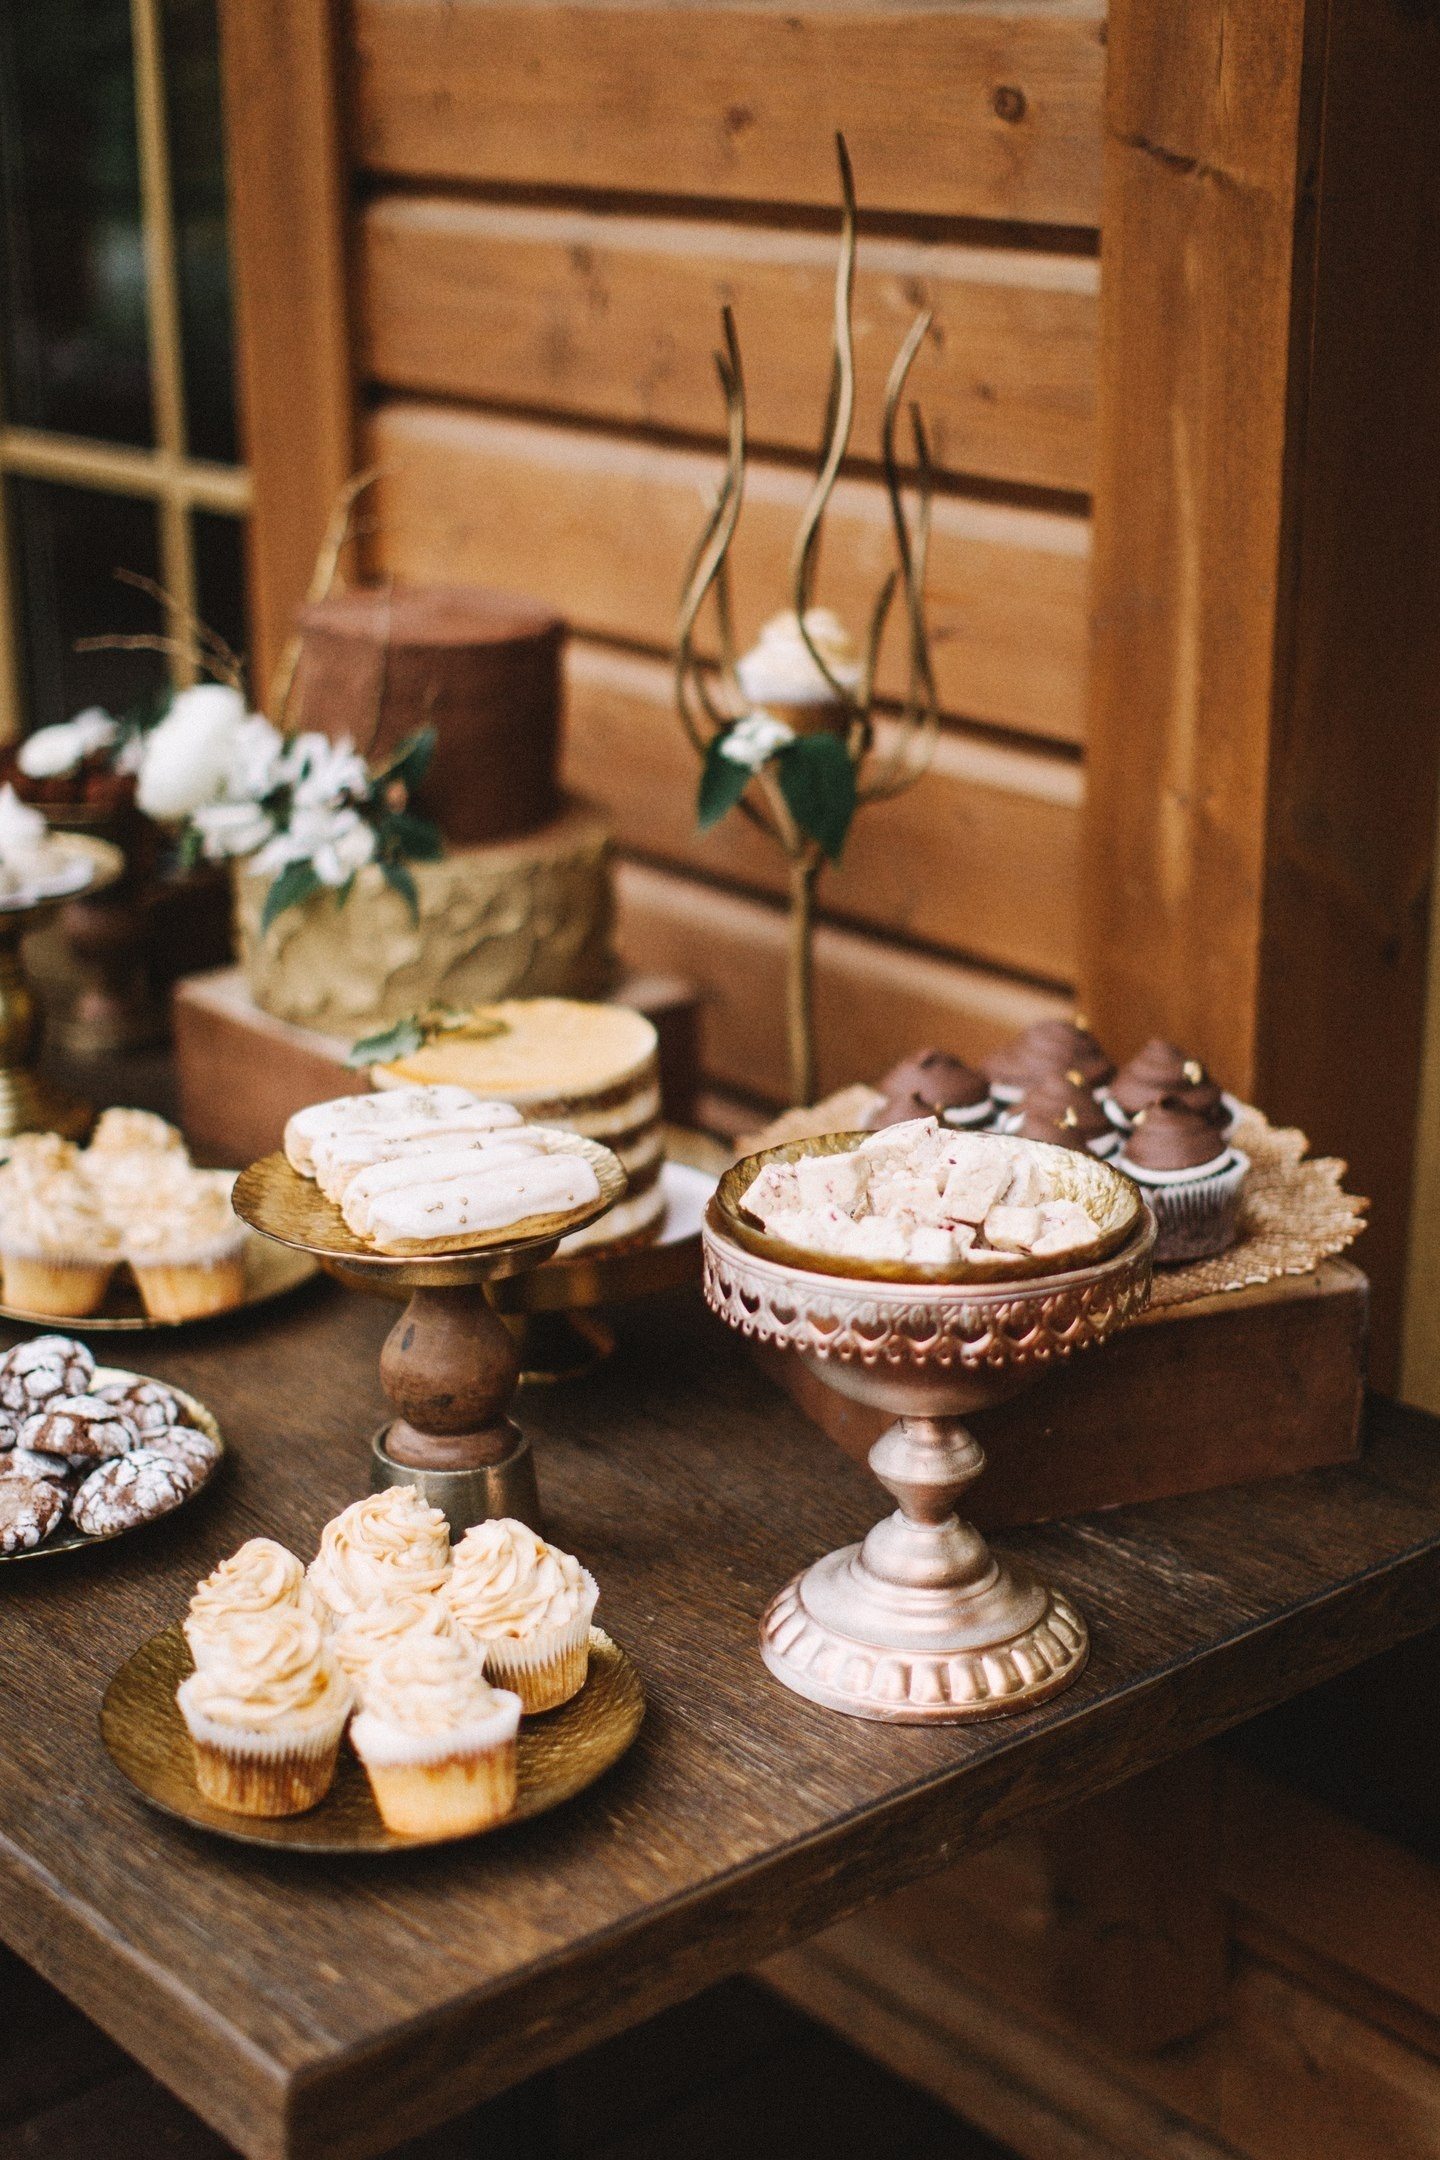 Bare të thyera të çokollatës, truffles, desserts ajrore mocha, zbukuruar me fasule kafe dhe biskota hapur me krem ​​në një stil të dasmës duken të mëdha në kompaninë e kuti të moshuar dhe qëndron ornate